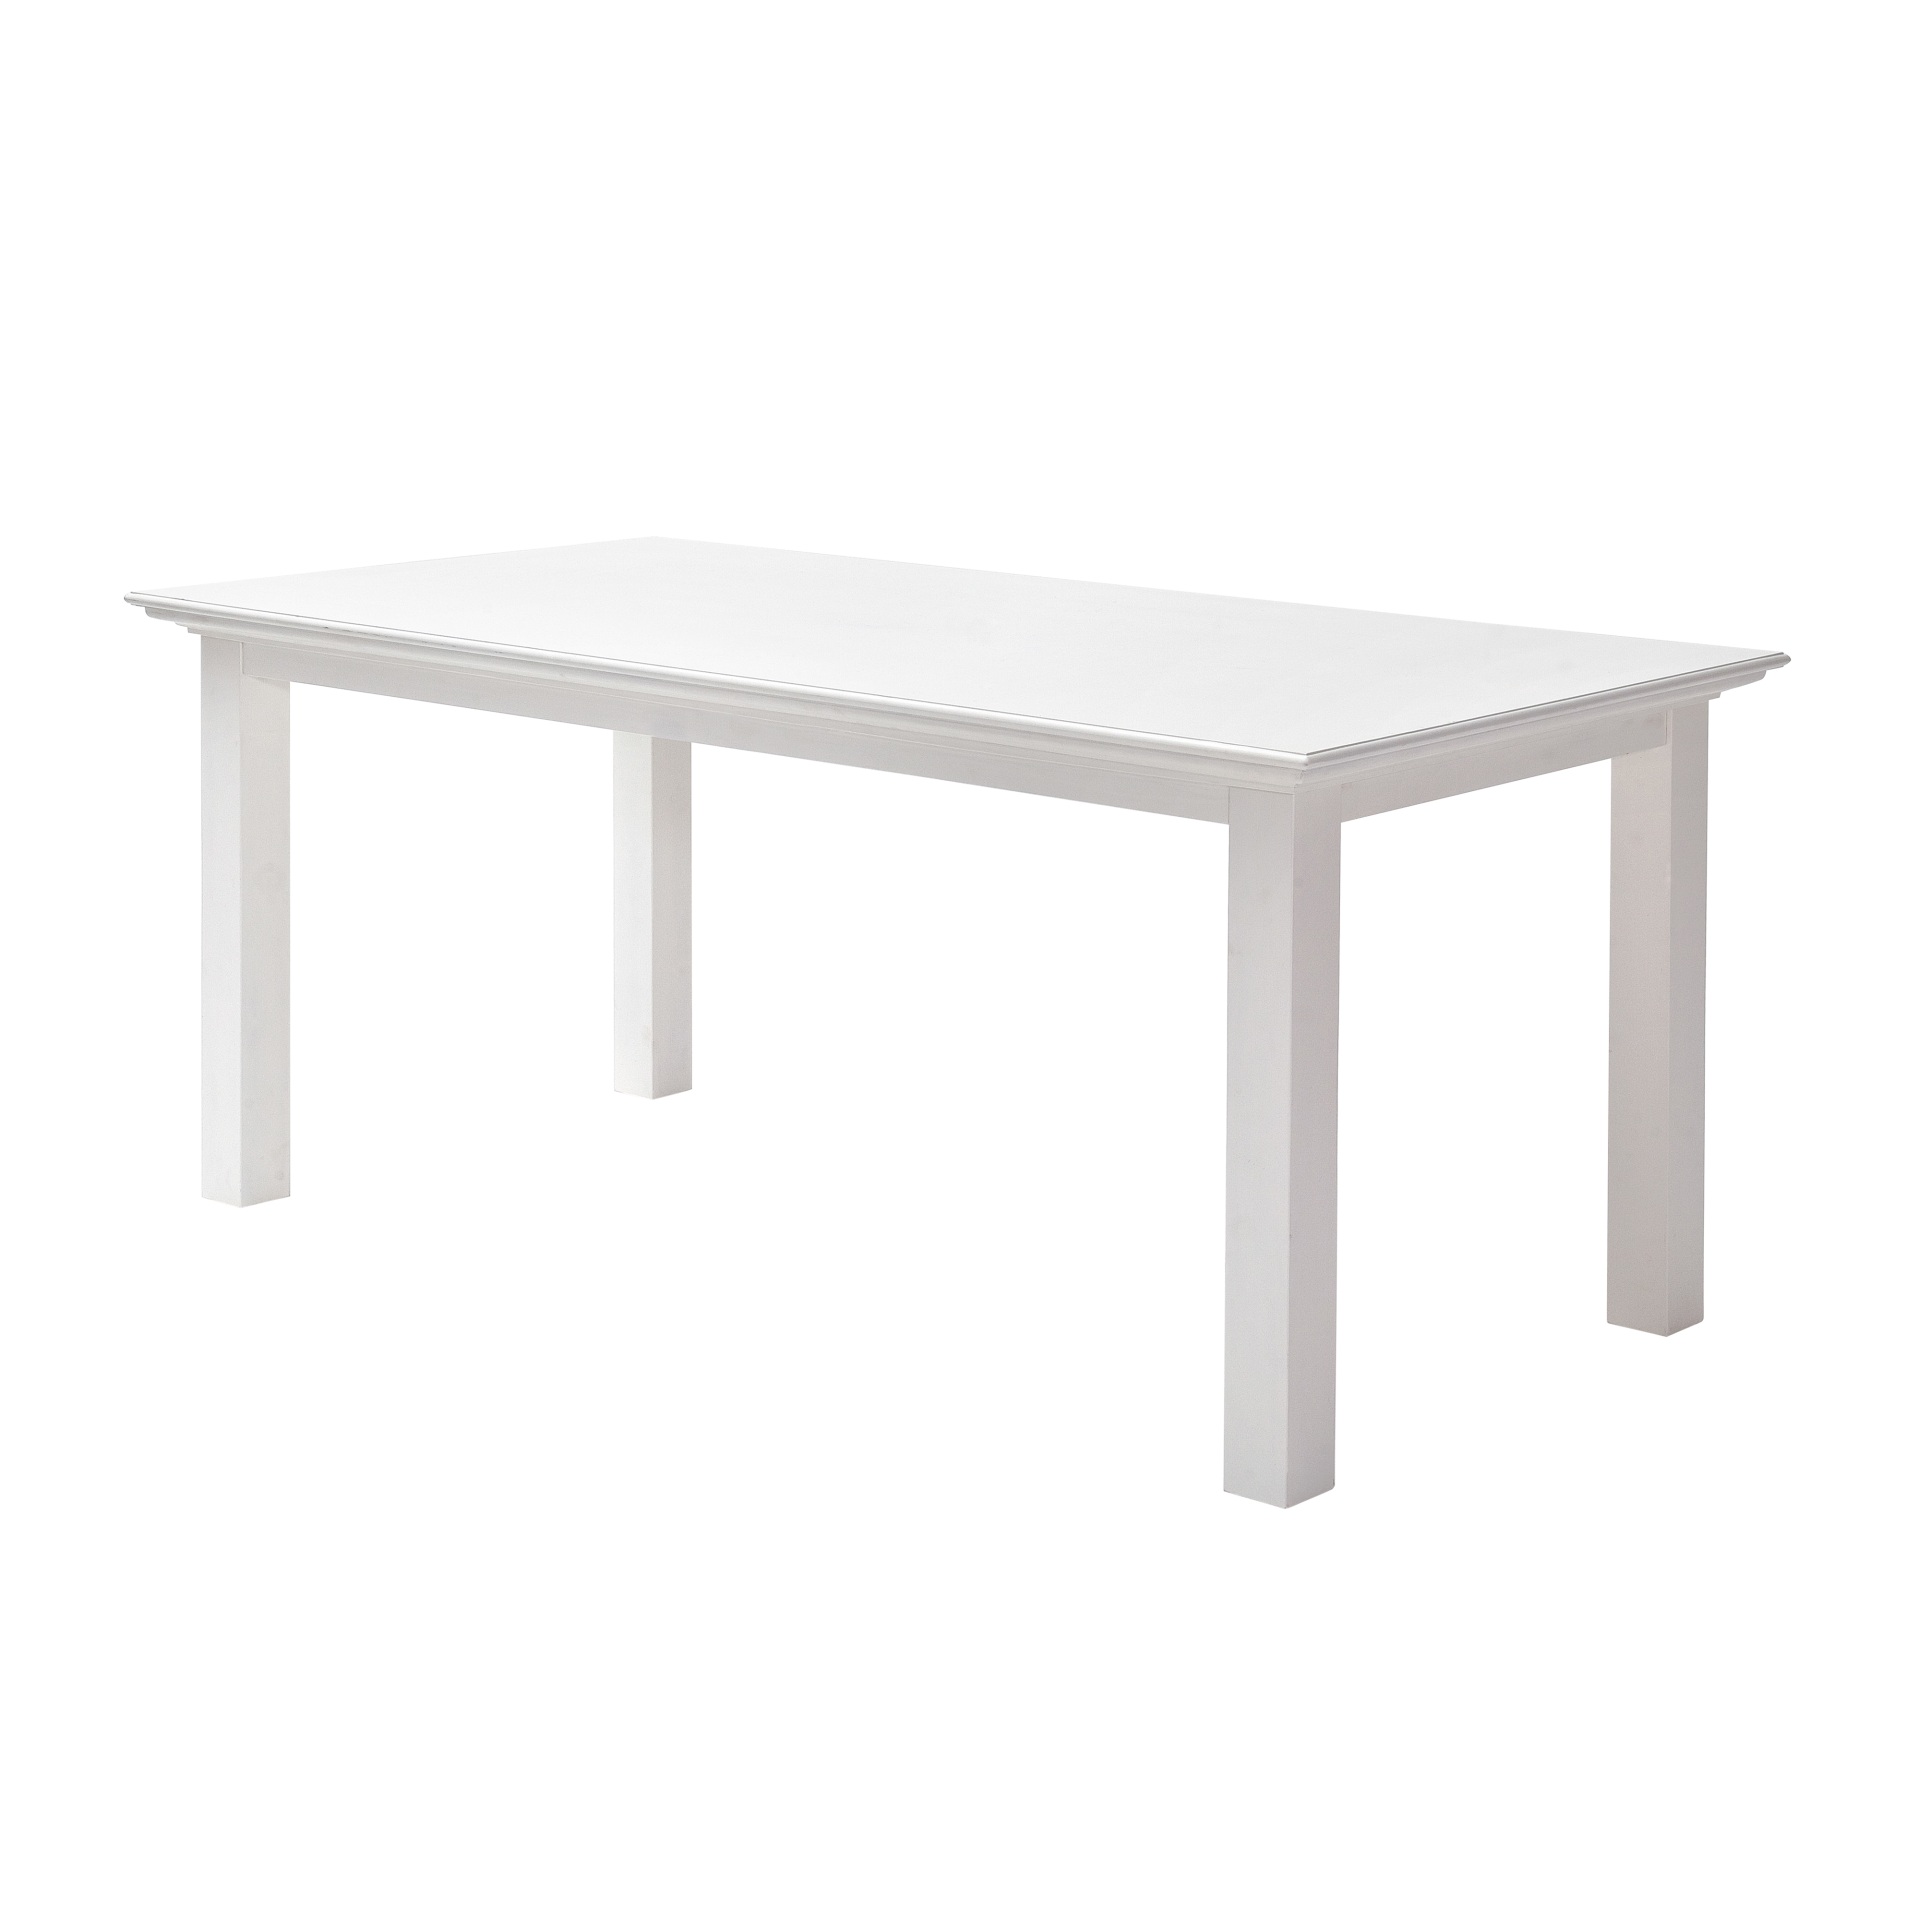 Der Esstisch Halifax überzeugt mit seinem Landhaus Stil. Gefertigt wurde er aus Mahagoni Holz, welches einen weißen Farbton besitzt. Der Tisch besitzt eine Breite von 160 cm.